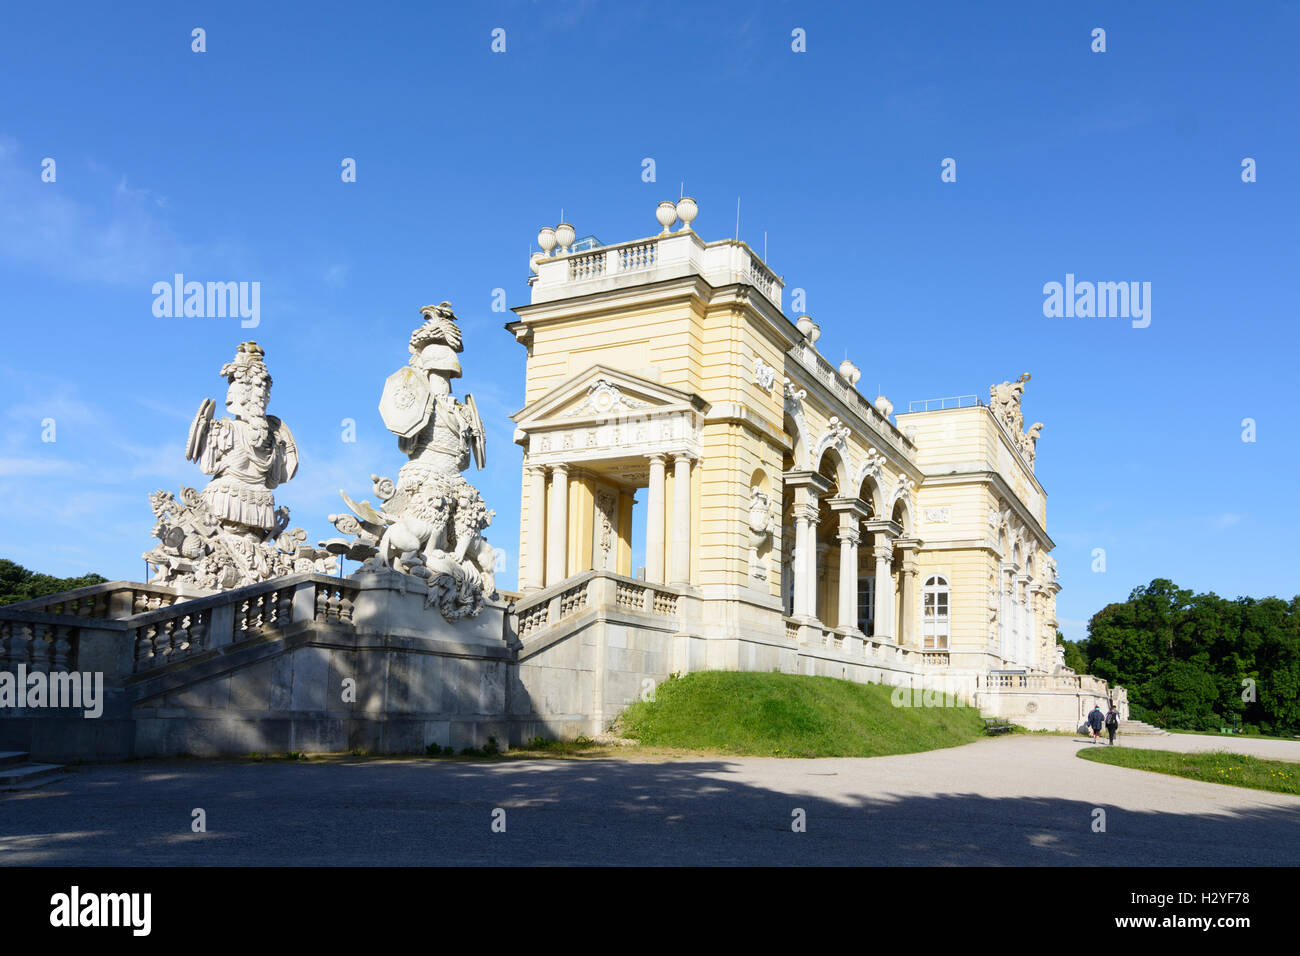 Wien, Viena: Gloriette en Schlosspark (parque del palacio de Schönbrunn), 13, Wien, Austria Foto de stock